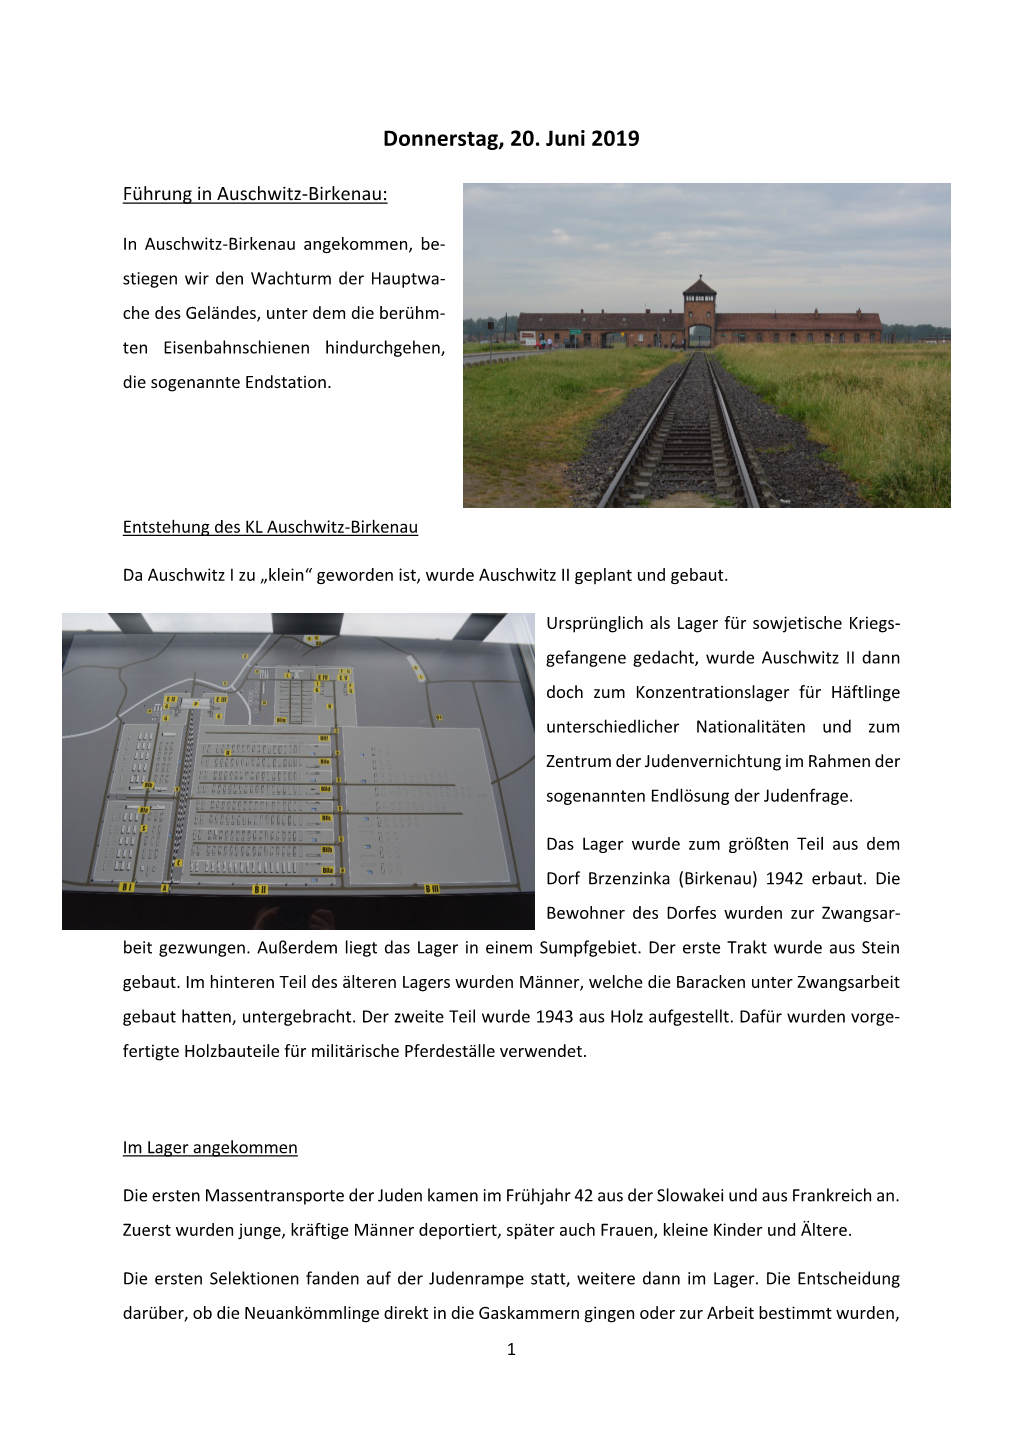 Führung in Auschwitz-Birkenau